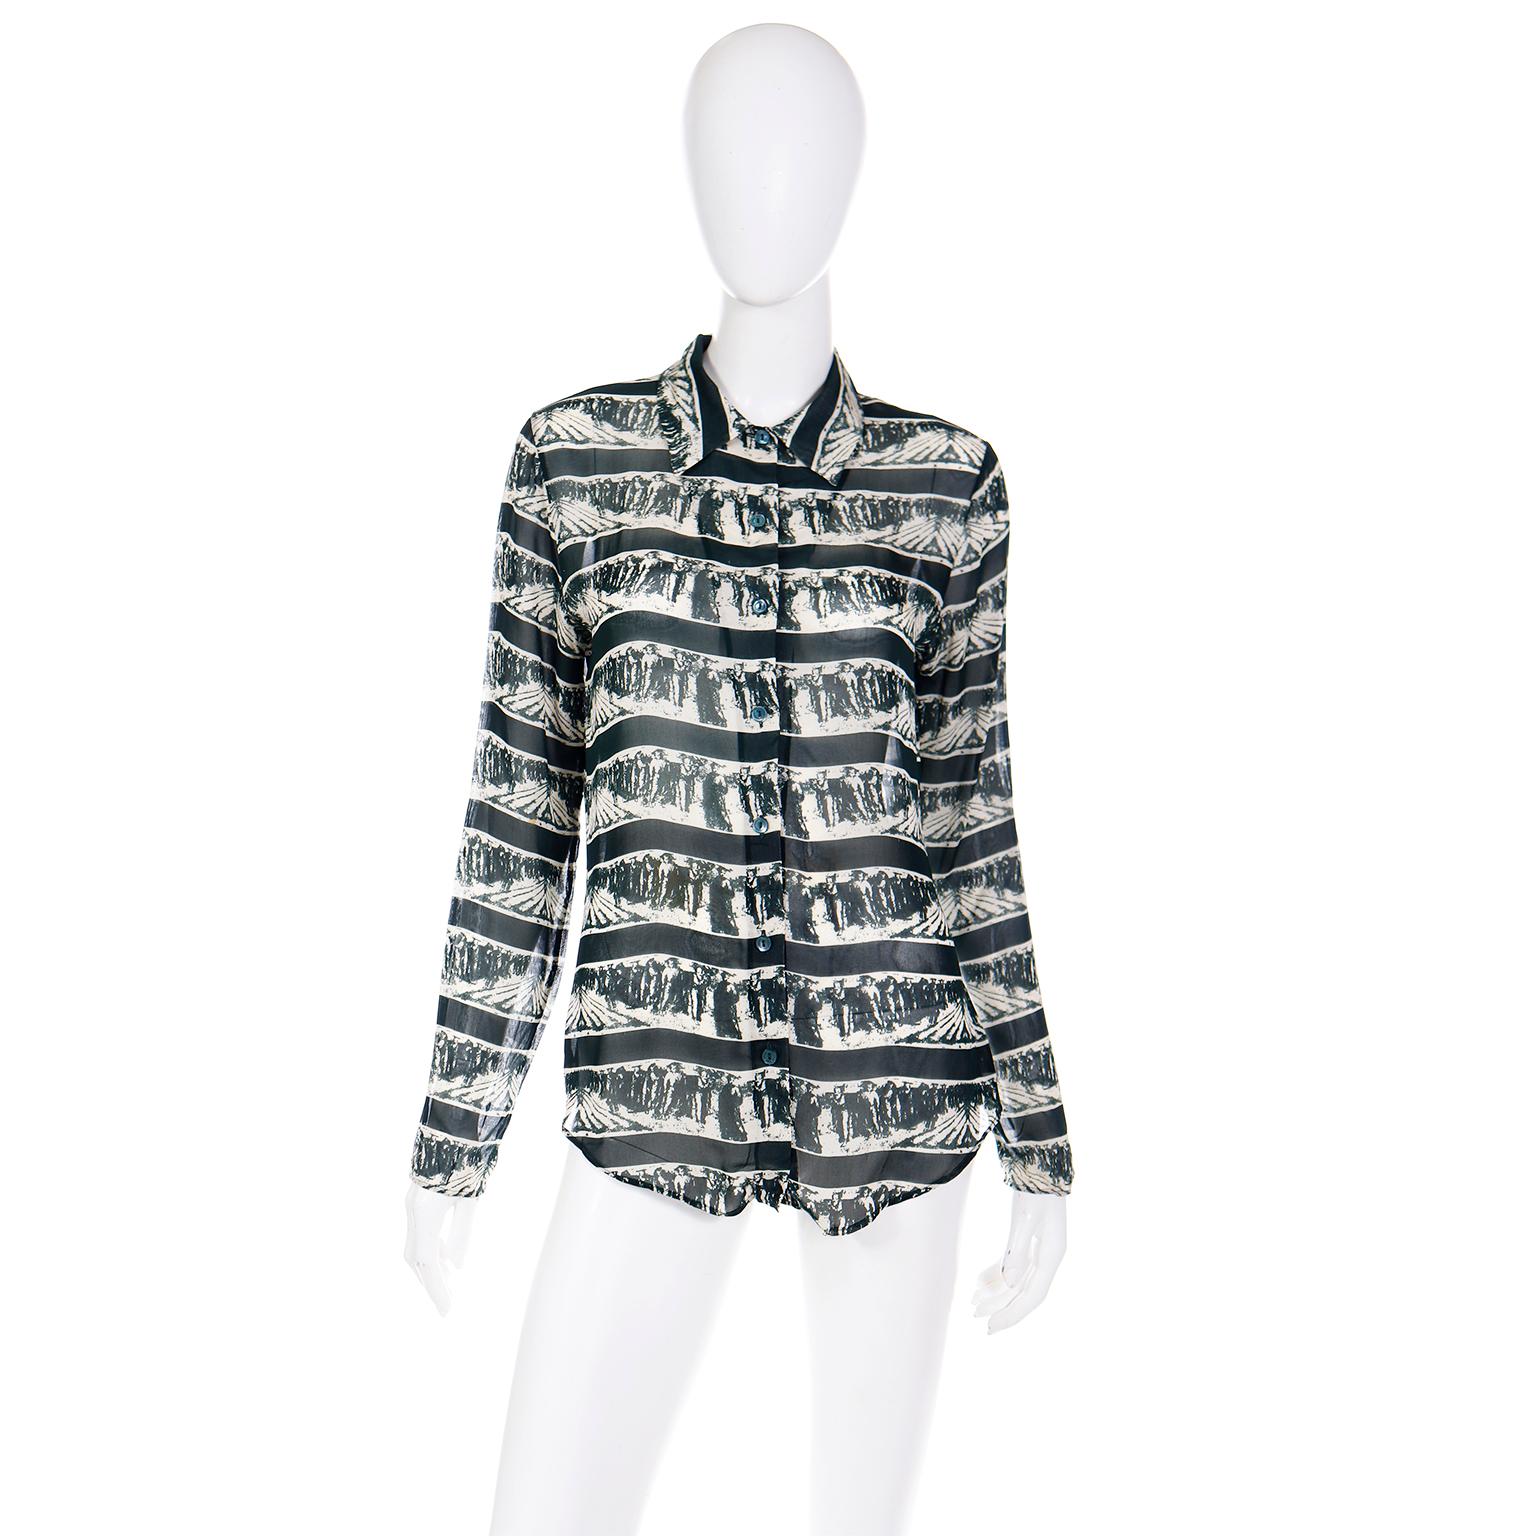 Dies ist ein wirklich Spaß Vintage 1990's Jean Paul Gaultier Shirt in einem großen Vintage Neuheit grafischen Druck. Diese Bluse mit spitzem Kragen ist aus durchsichtigem, waldgrünem und elfenbeinfarbenem Rayon mit perlmuttgrünen, runden Knöpfen in